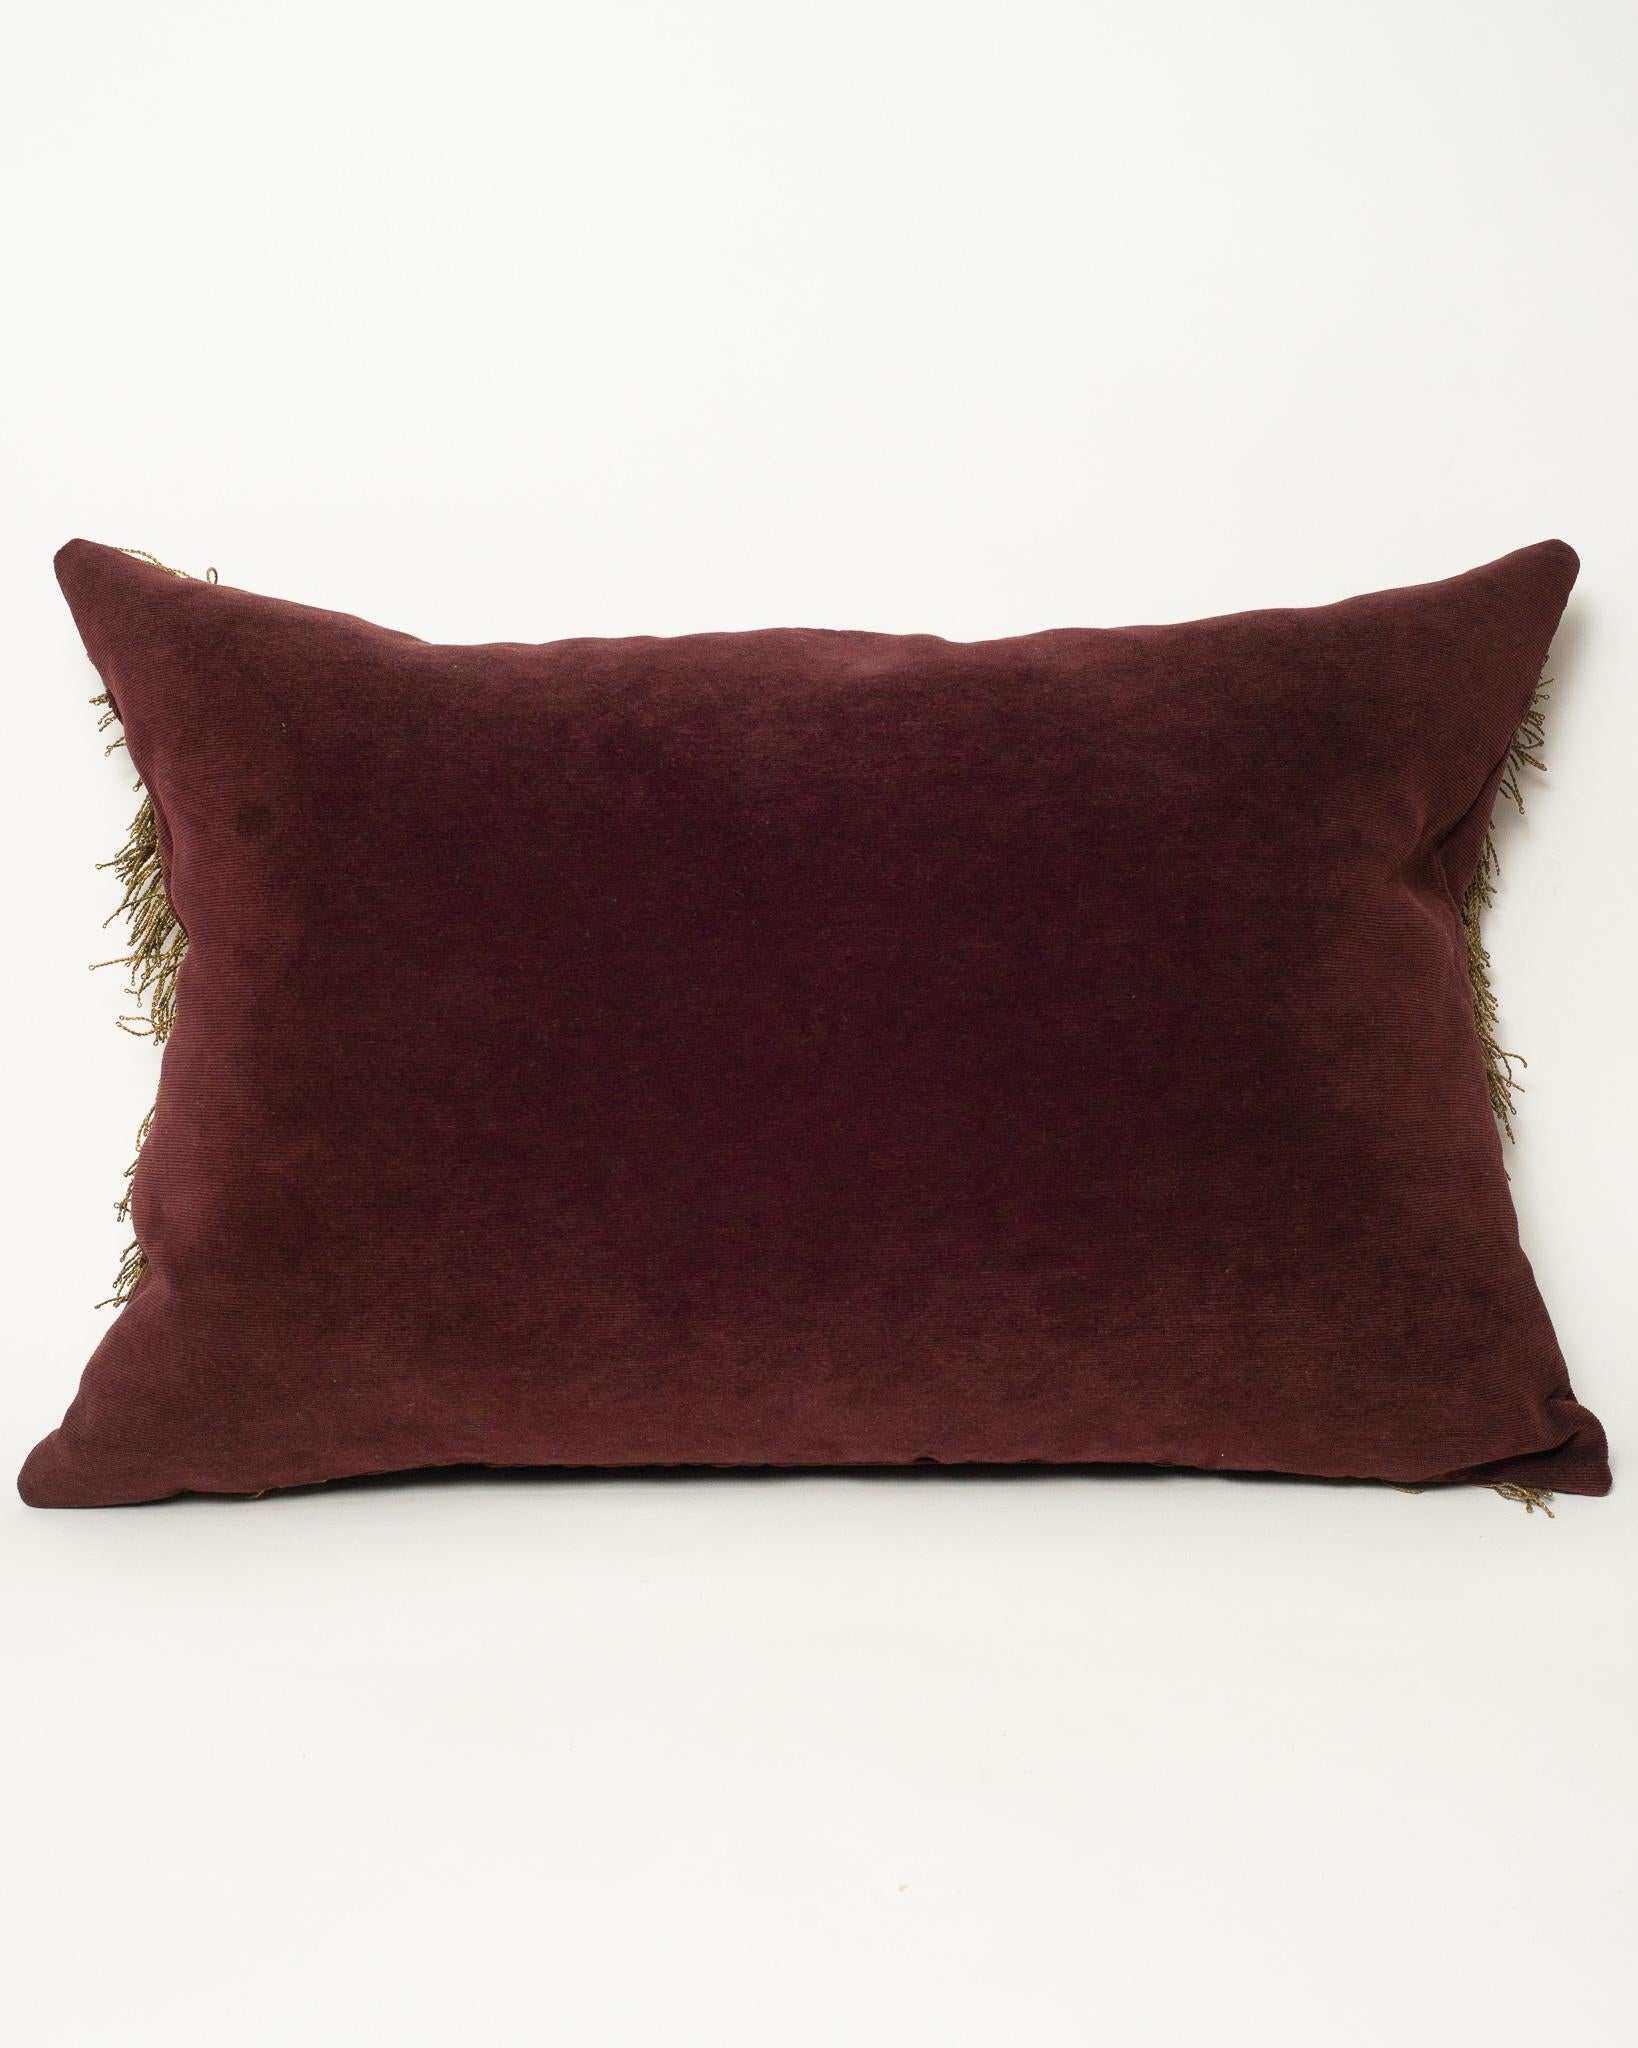 Italian Burgundy Velvet Pillow with Antique Metallic Trim & Tassels For Sale